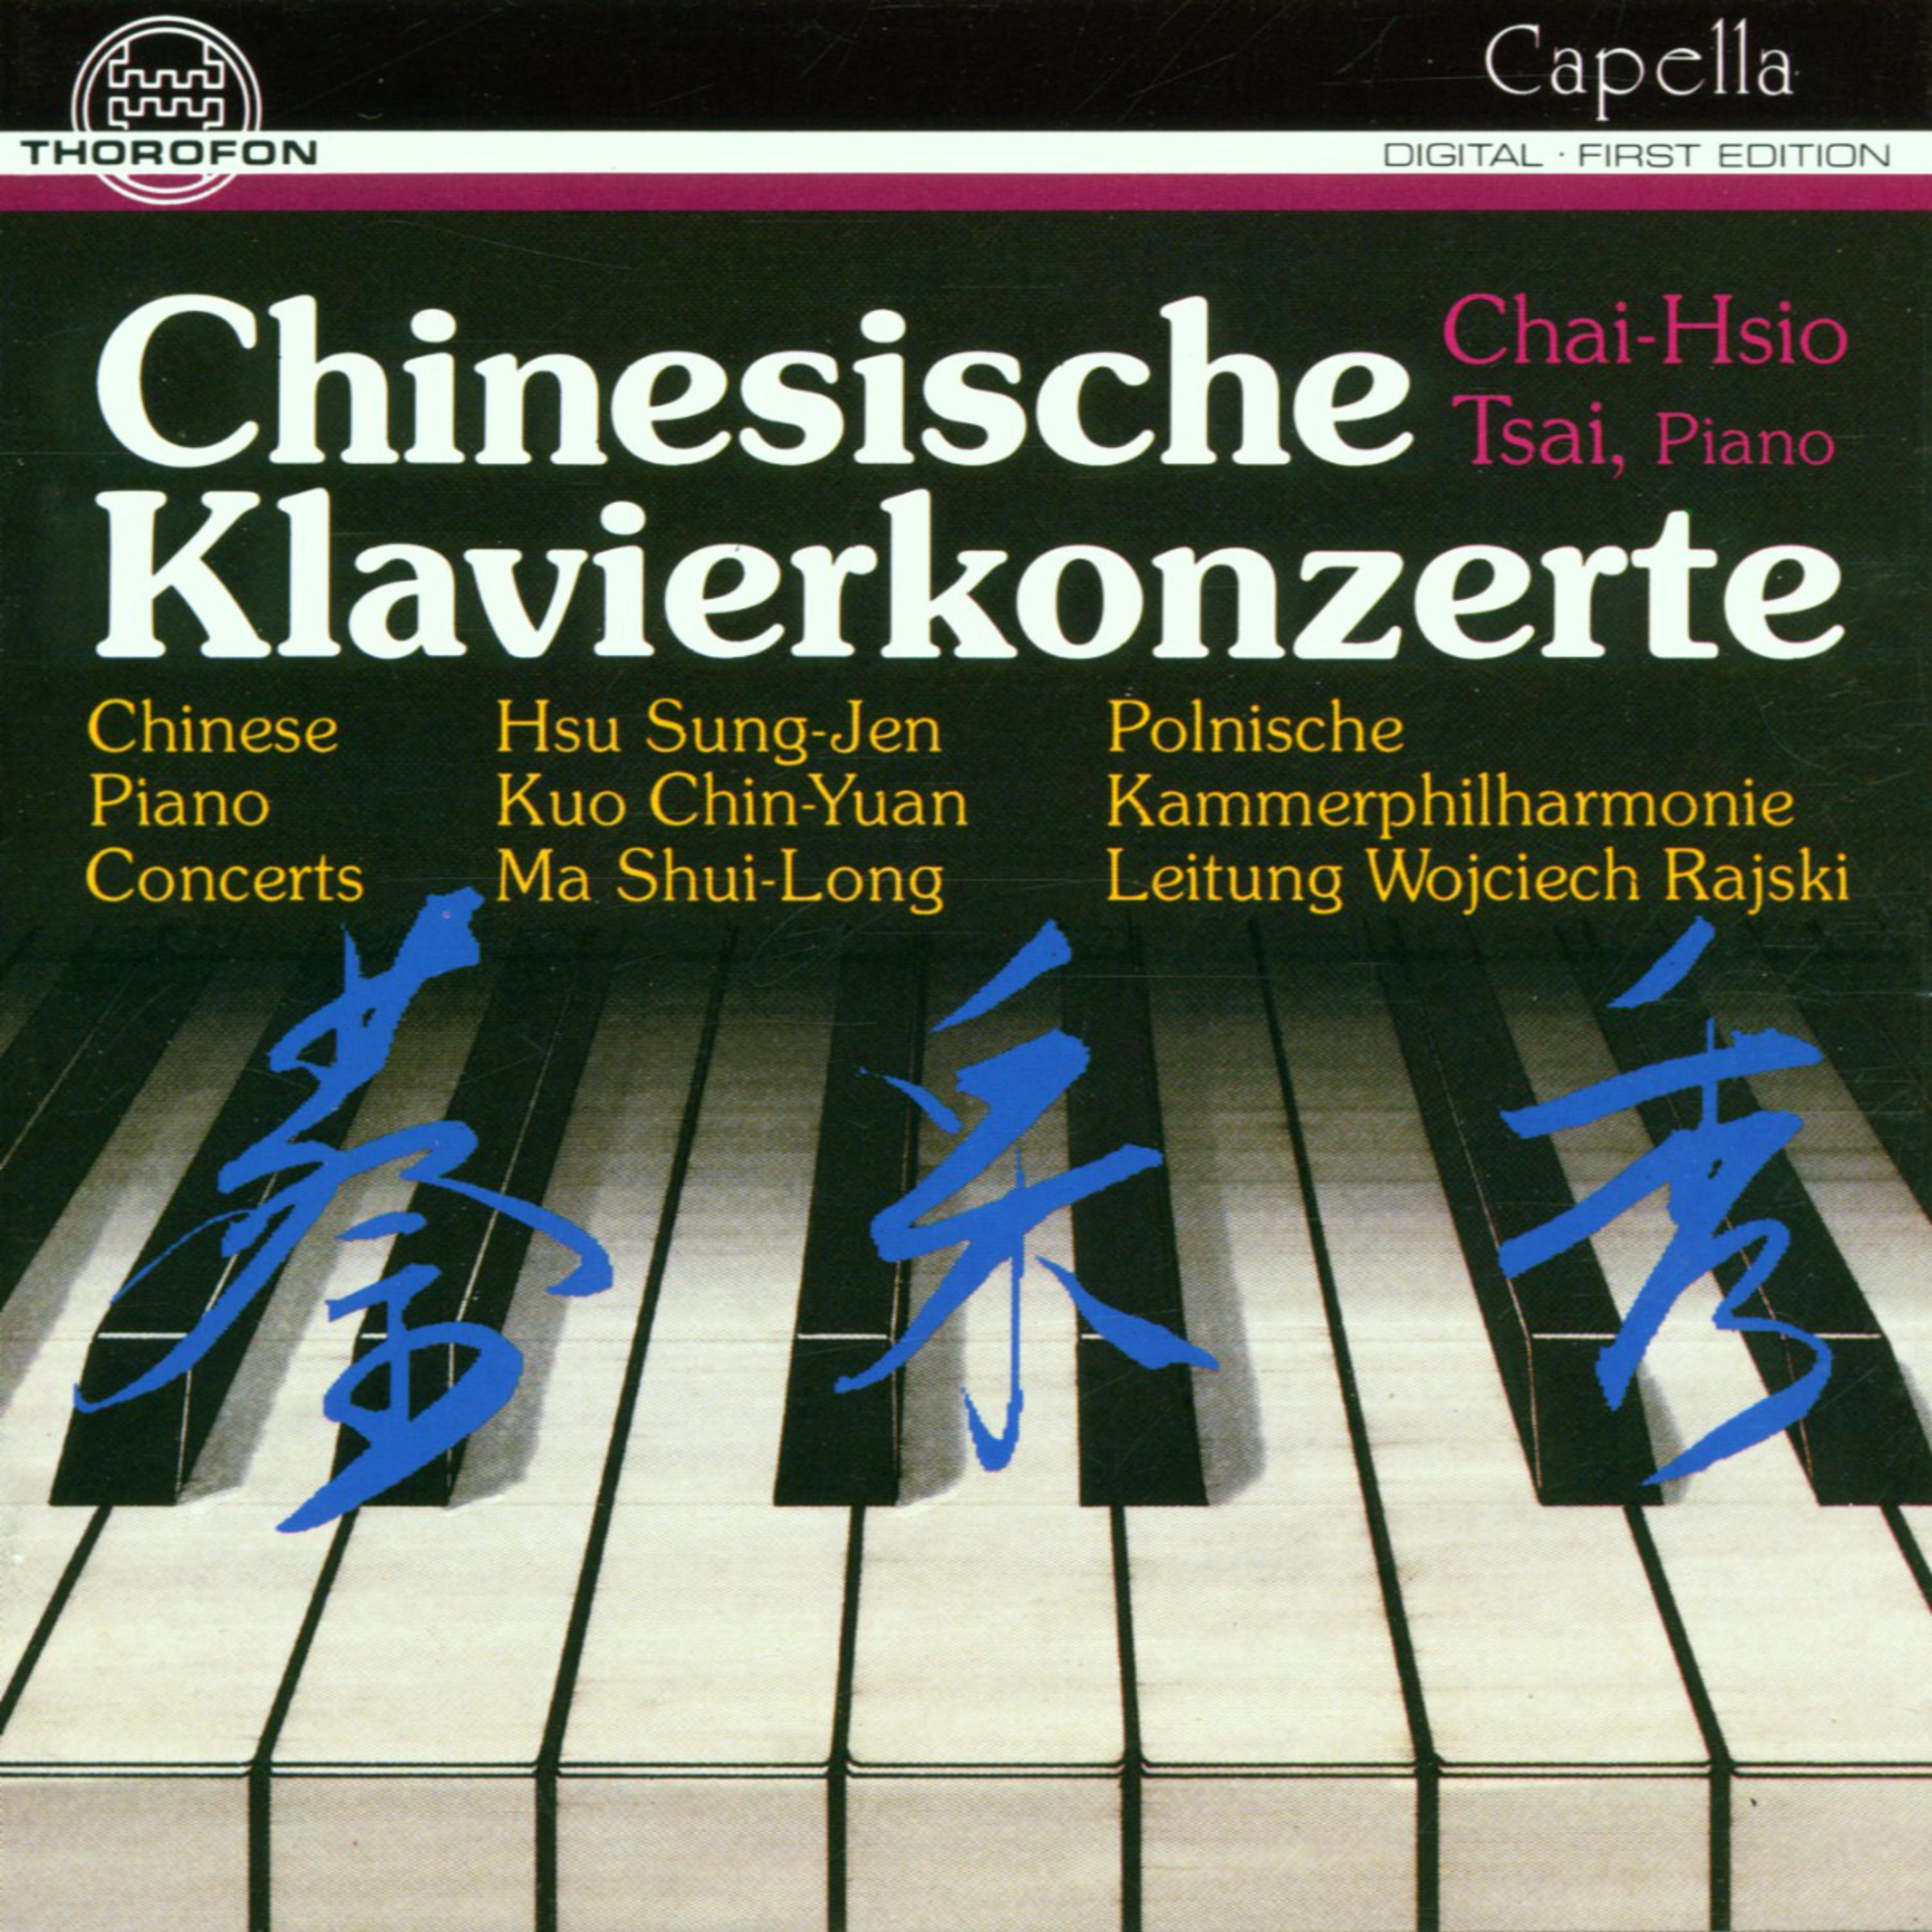 Concerto for Piano and Orchestra: I. Allegro